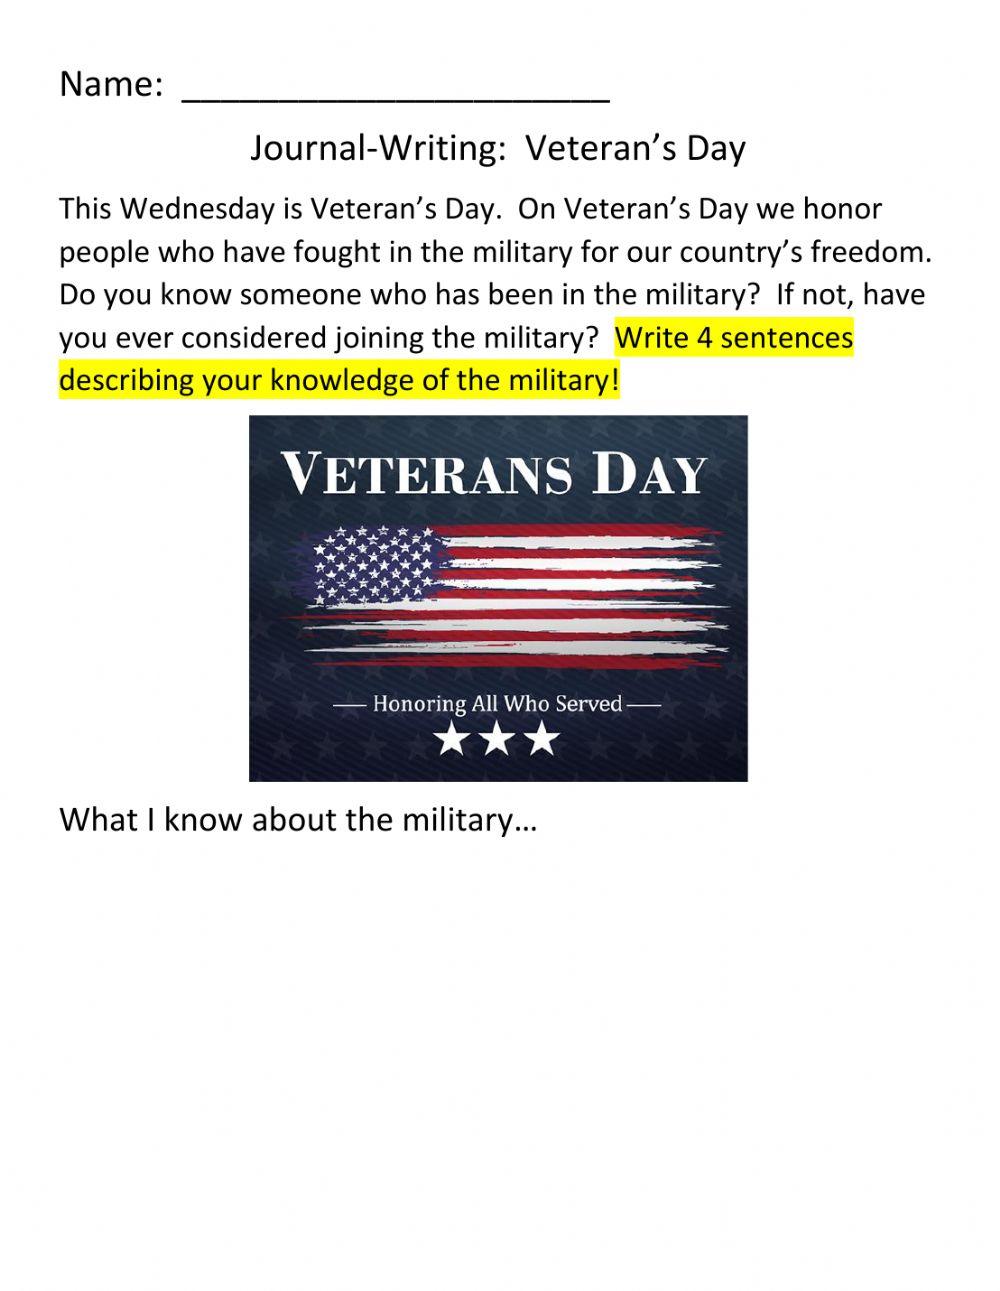 JOURNAL-WRITING:  Veteran's Day